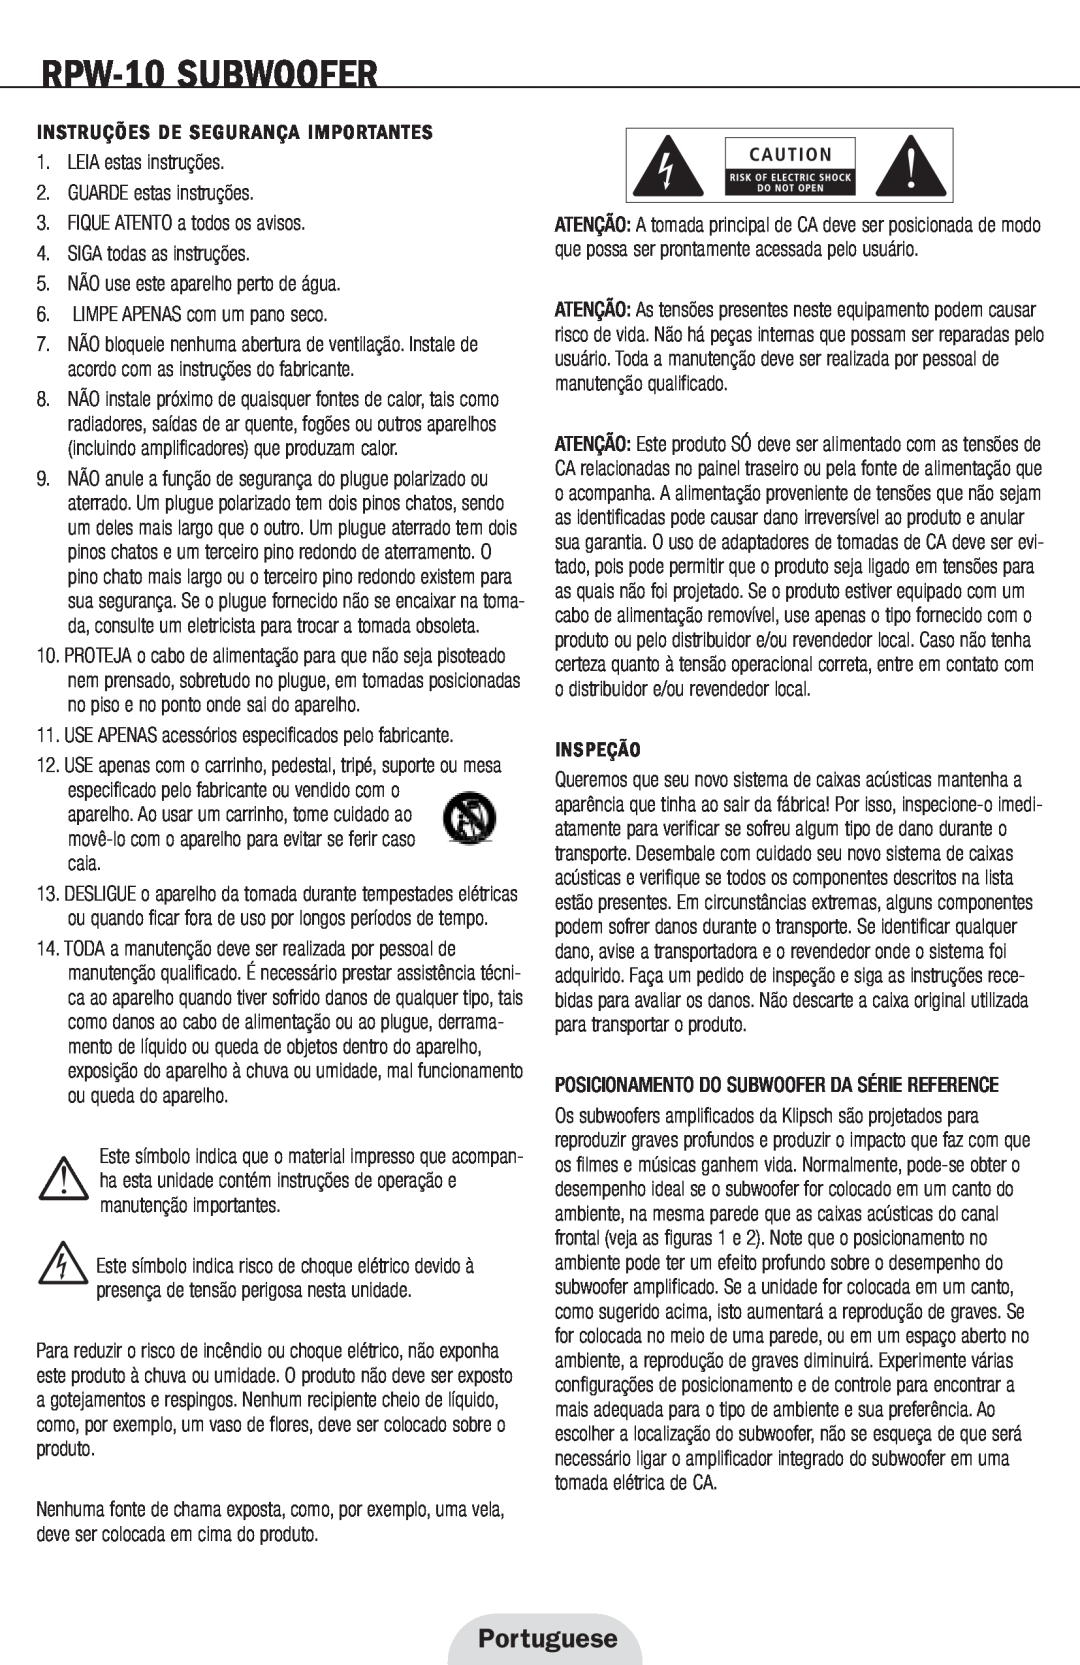 Klipsch Portuguese, RPW-10SUBWOOFER, Instruções De Segurança Importantes, FIQUE ATENTO a todos os avisos, Inspeção 